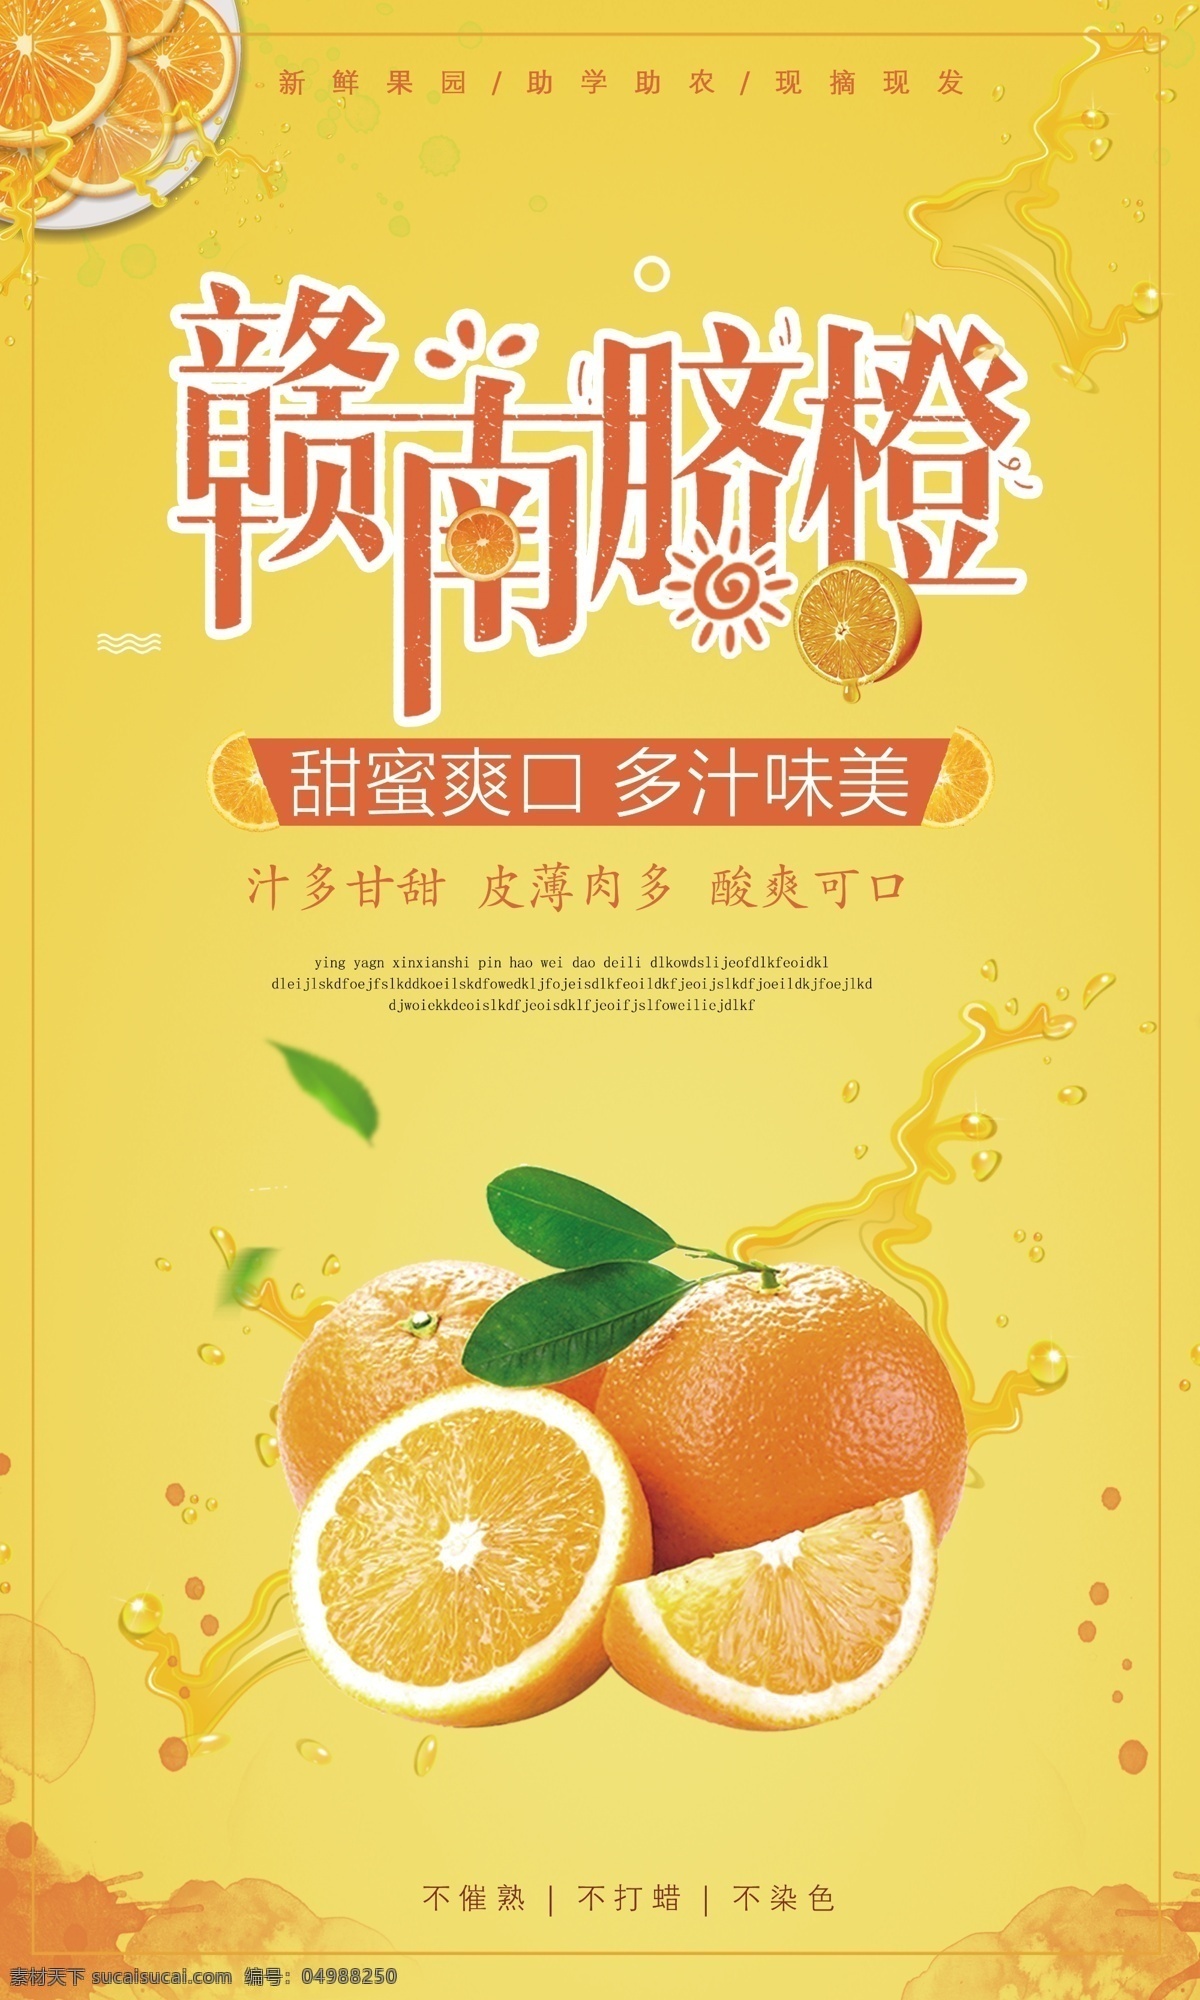 赣南 脐橙 橙色 橙汁 水果 美食 卡通 海 赣南脐橙 美食卡通海报 海报